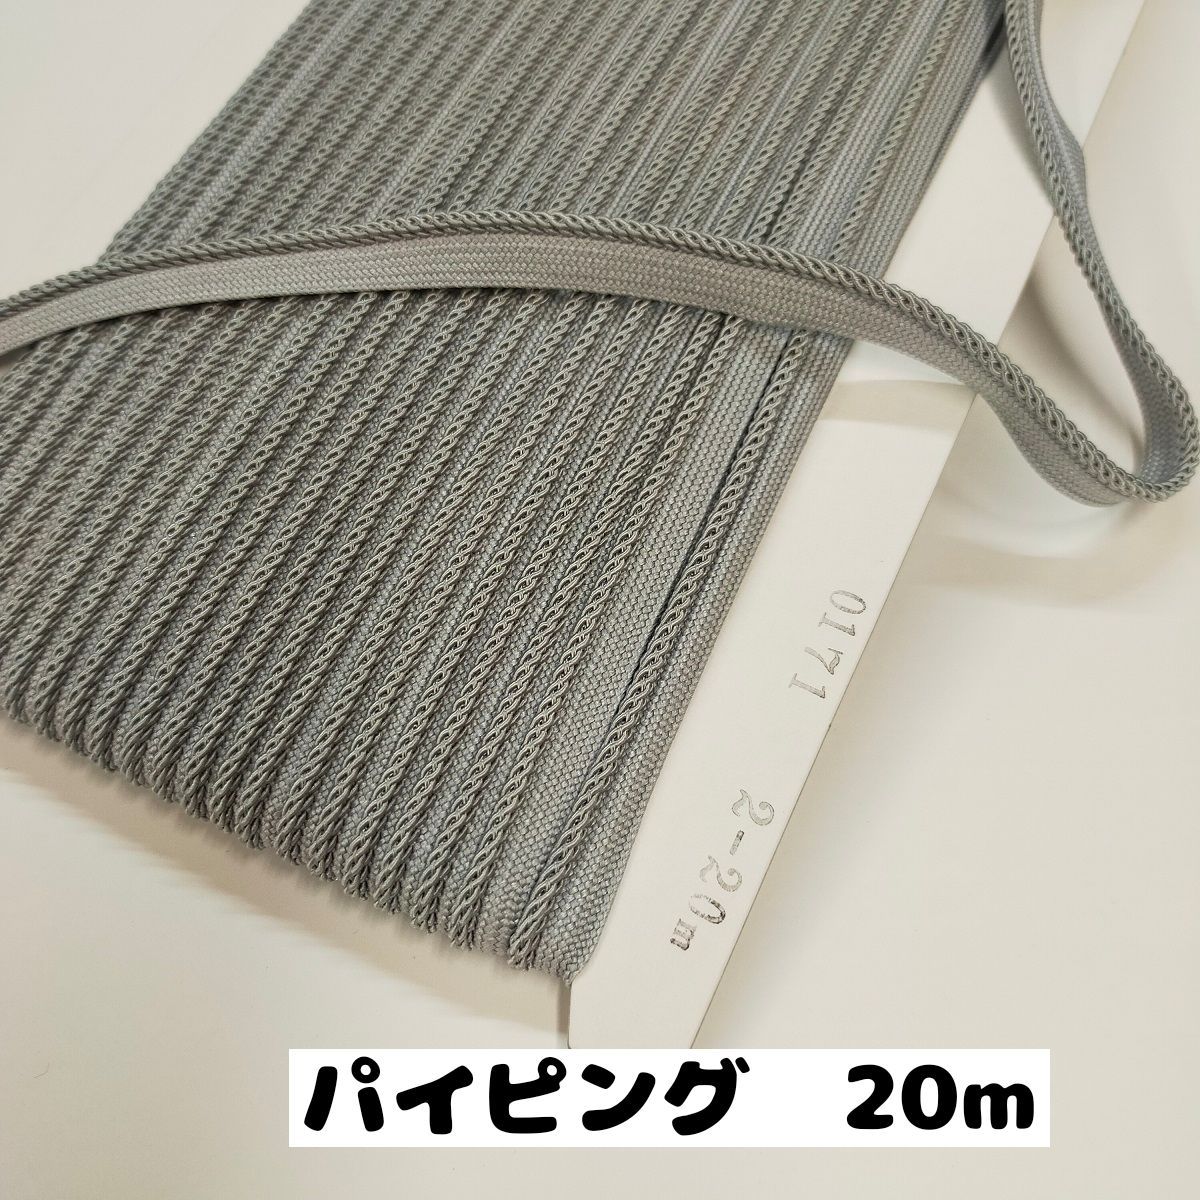 品質は非常に良い パイピングテープ 縁取りテープ 手芸 クッション紐や衣類のなどに 紐直径約3から3.5mm巾 20m 0171 5.グレー 